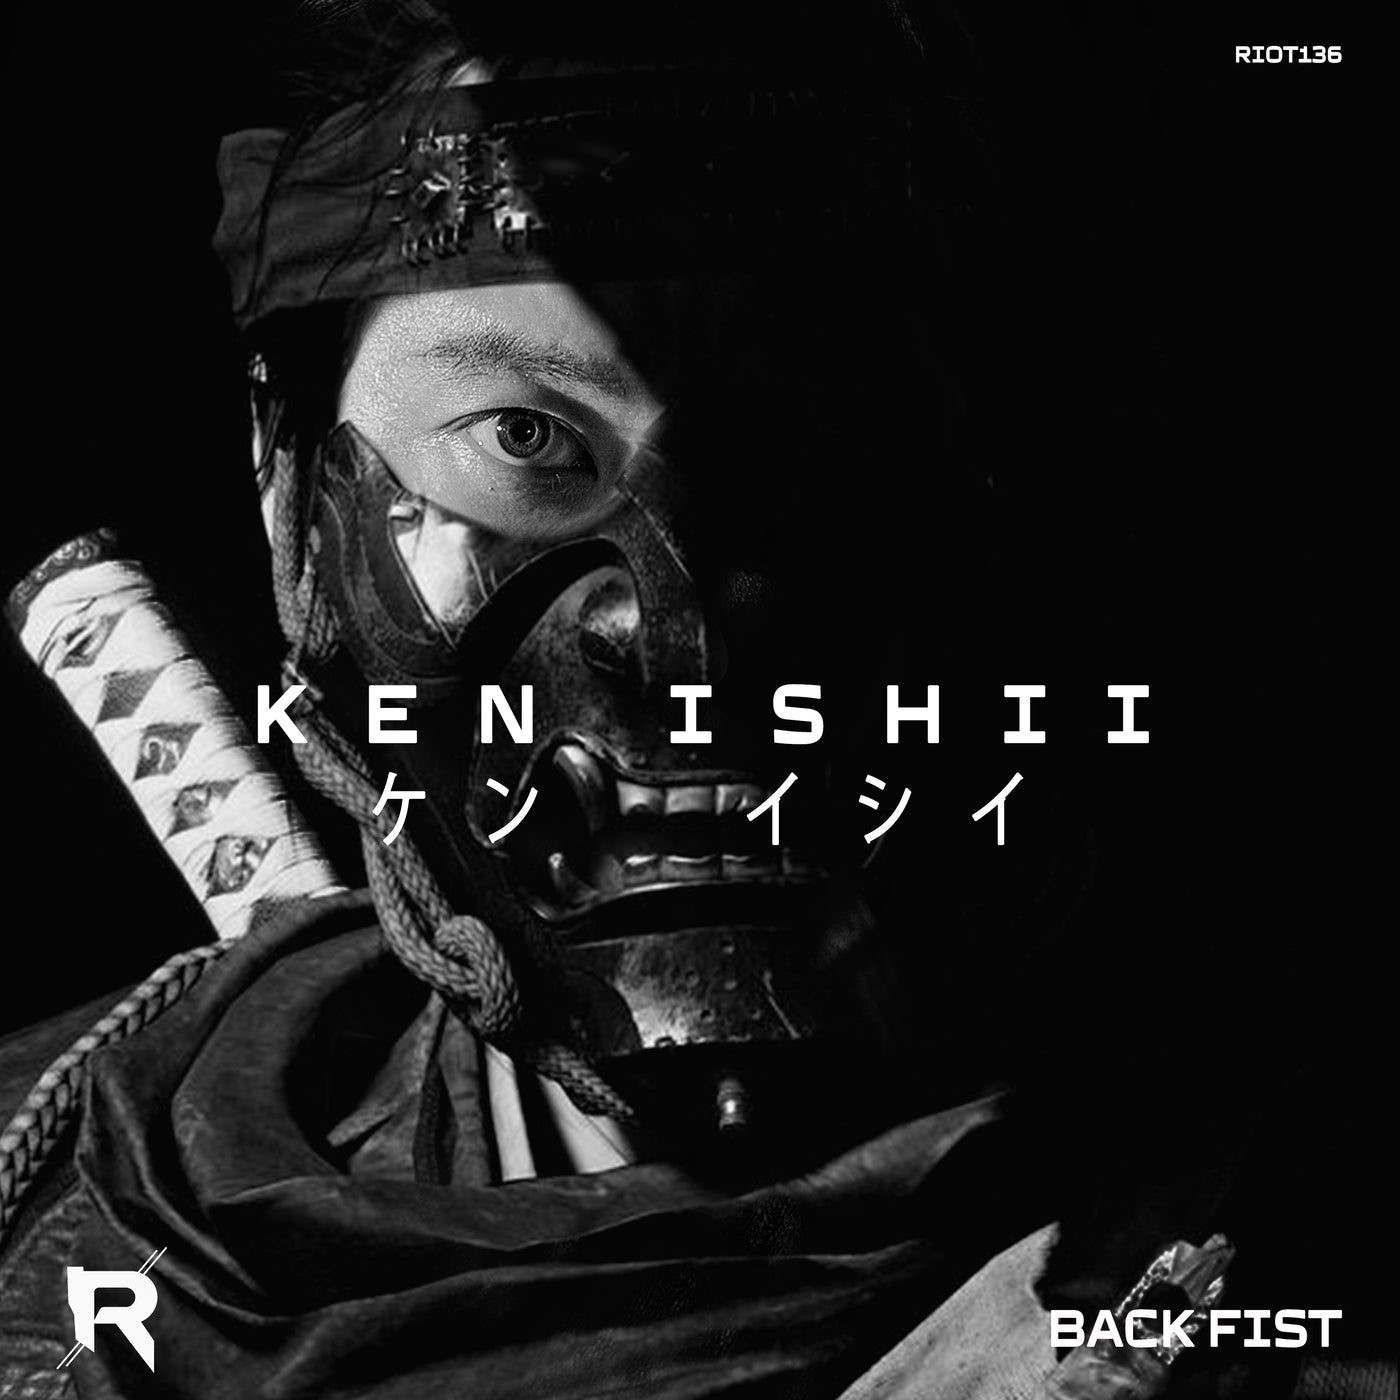 image cover: Ken Ishii - Back Fist / RIOT136